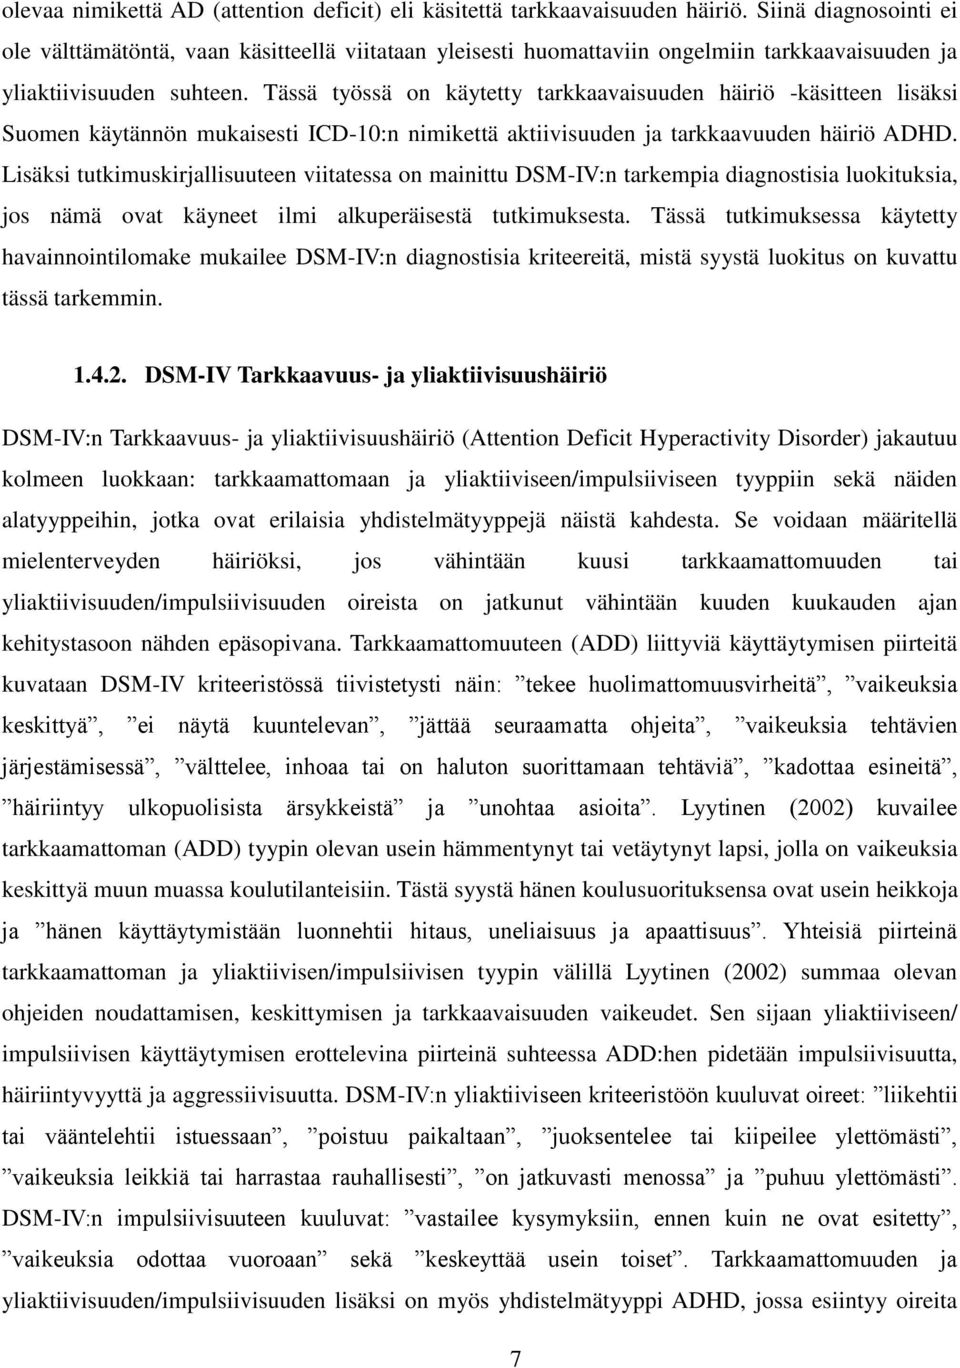 Tässä työssä on käytetty tarkkaavaisuuden häiriö -käsitteen lisäksi Suomen käytännön mukaisesti ICD-10:n nimikettä aktiivisuuden ja tarkkaavuuden häiriö ADHD.